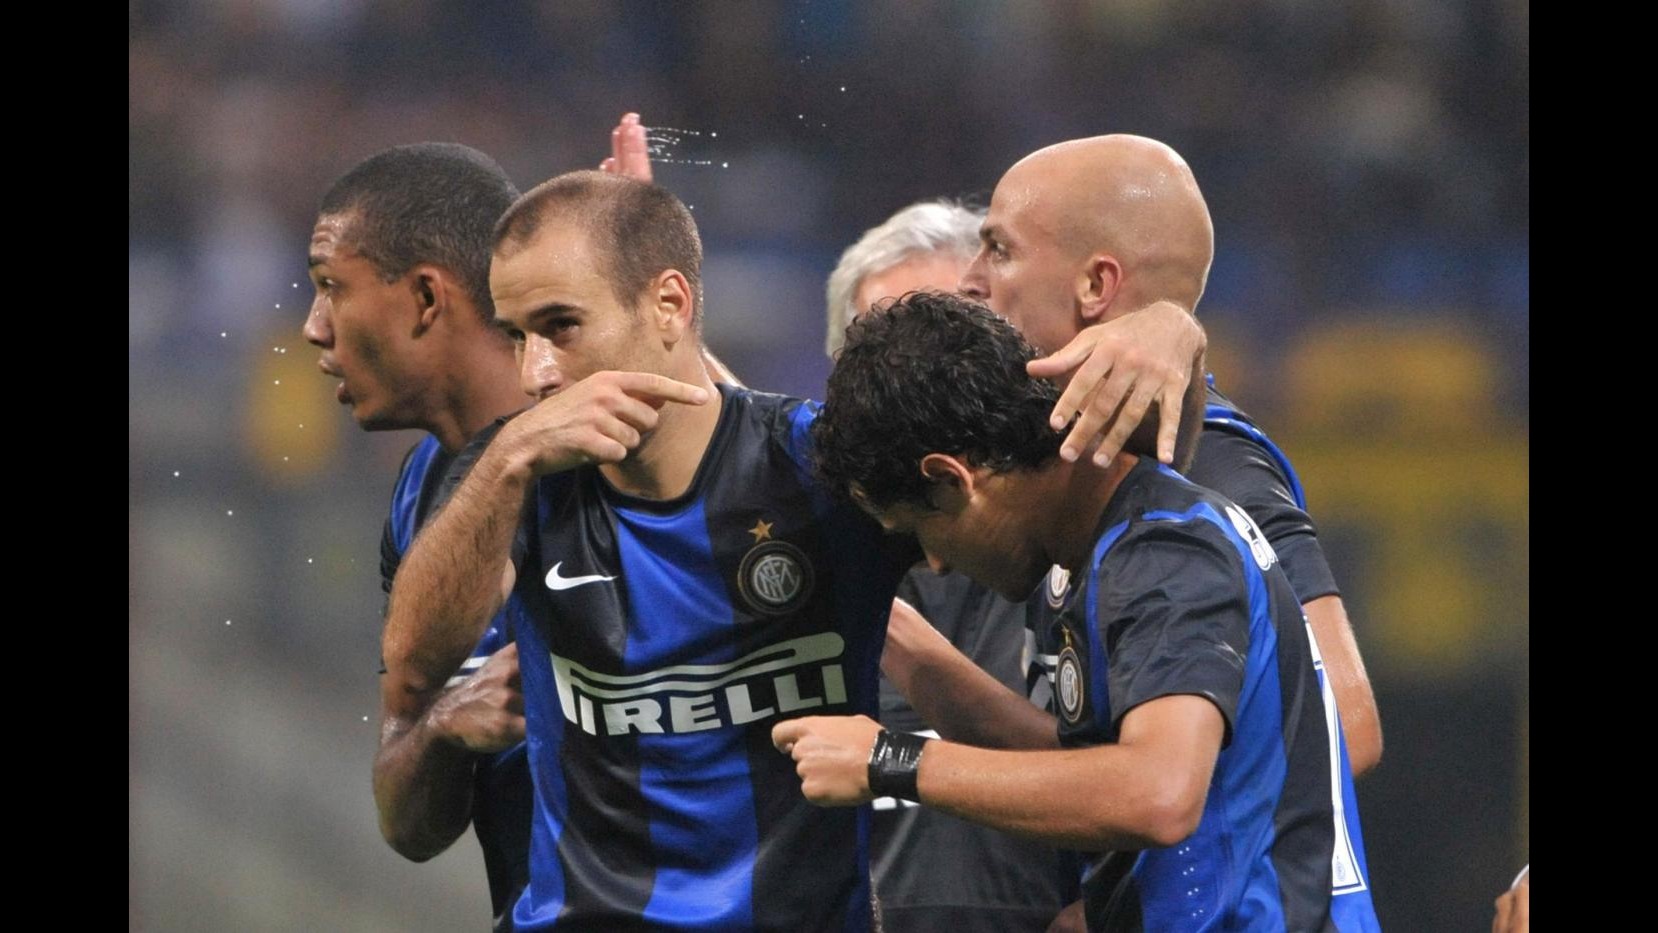 Europa League, Inter pareggia 2-2 in 10 con Vaslui ma è qualificata